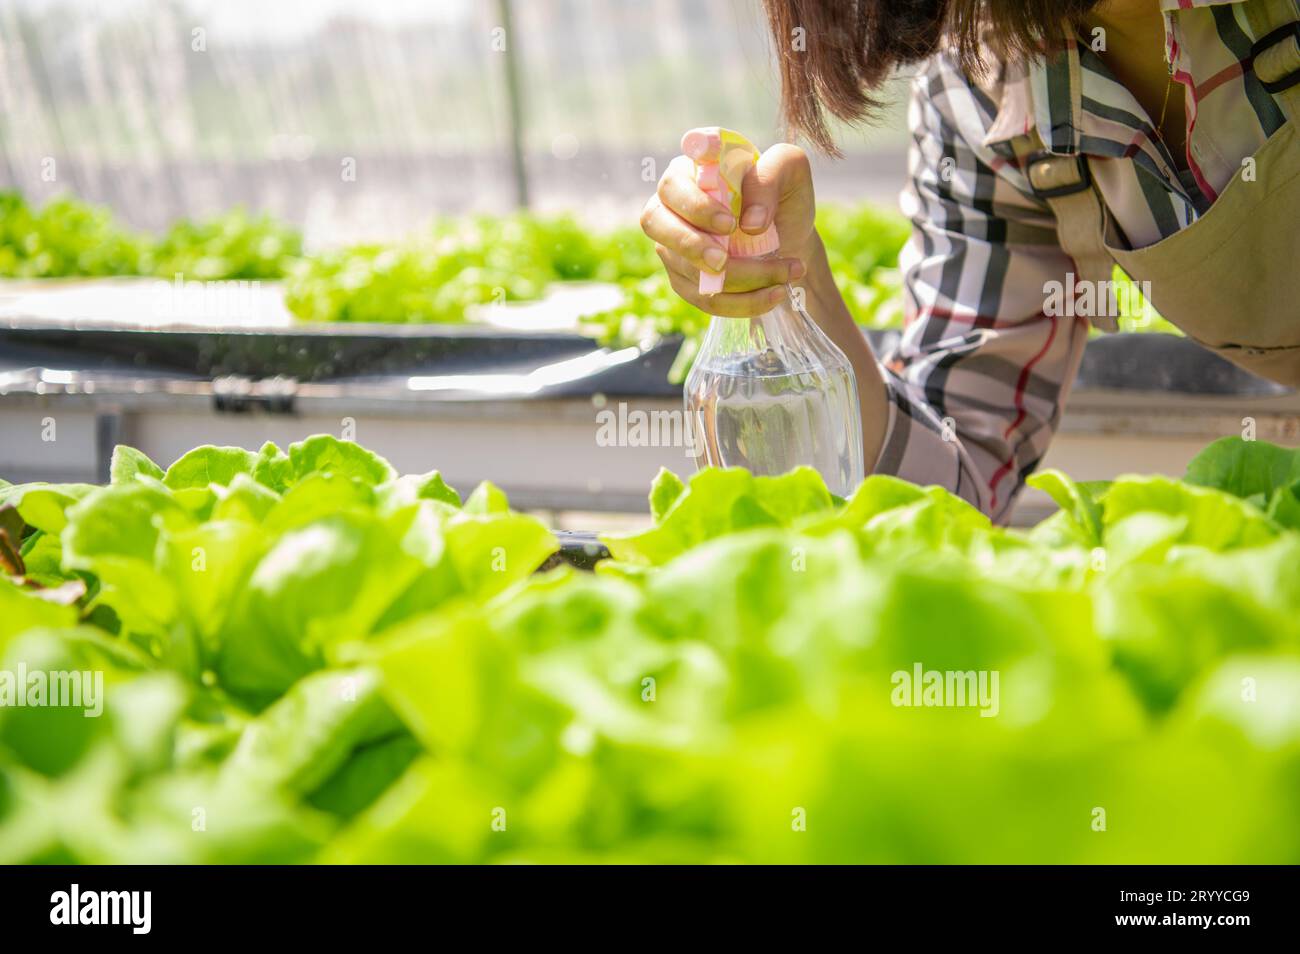 Nahaufnahme von nebeliger Wassersprühflasche bei Landwirtinnen, die Hand zum Keimen von hydroponischem Gemüse in Gewächshausgarten sprühten Stockfoto